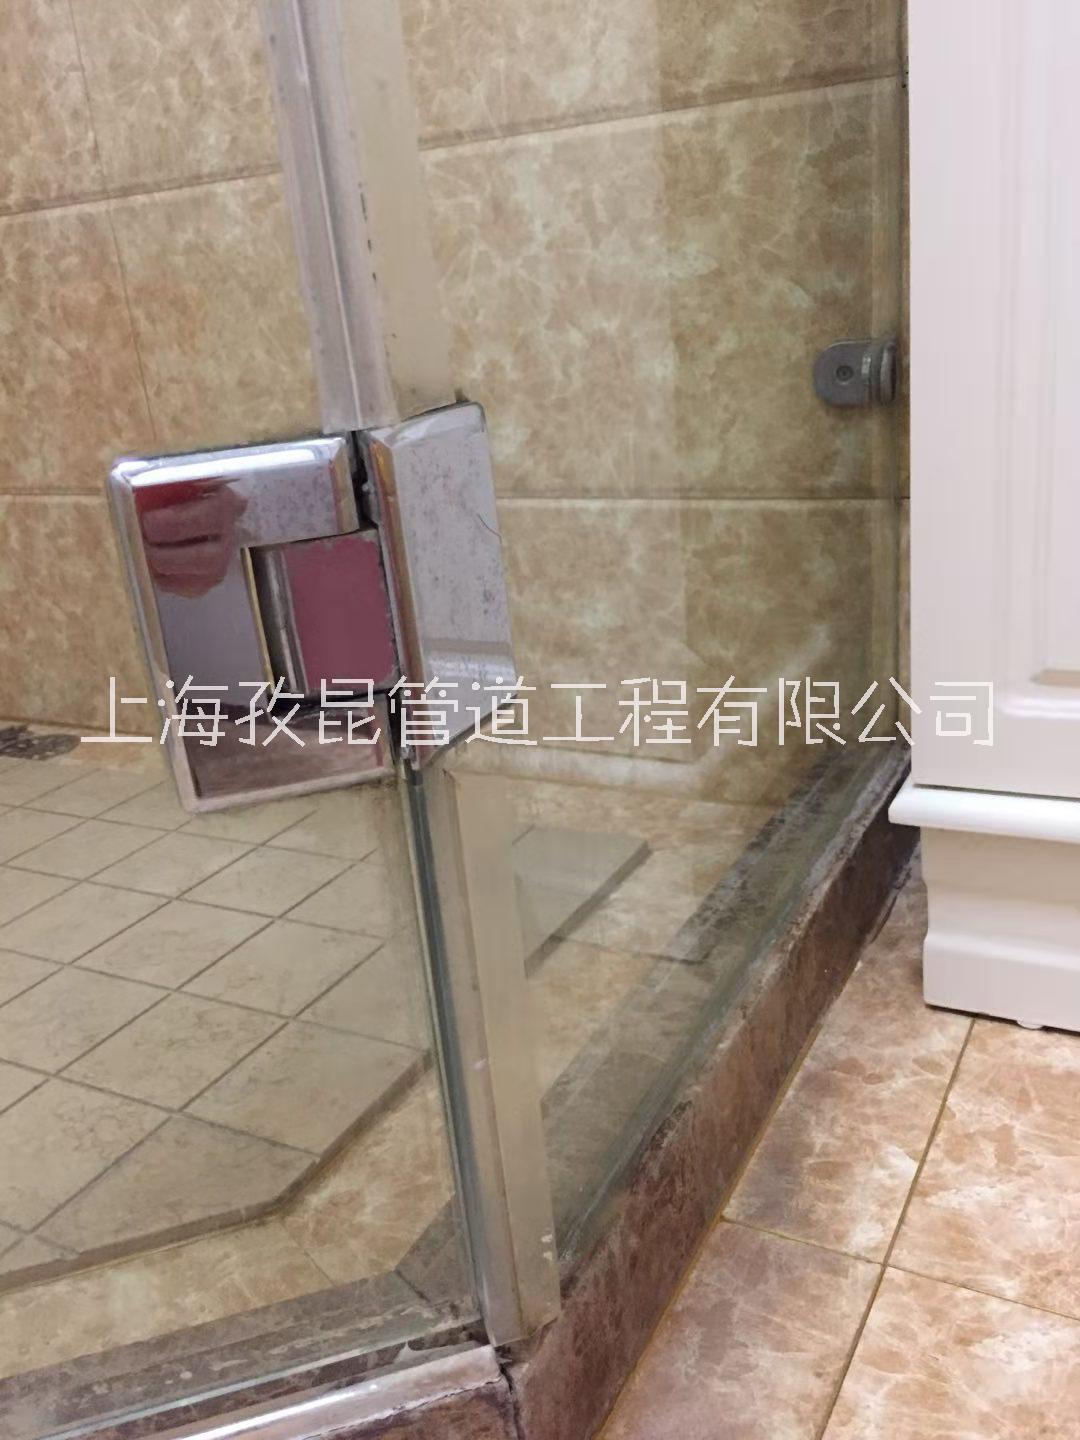 上海康利达淋浴房维修电话号码 淋浴房维修厂家 淋浴房修理价格